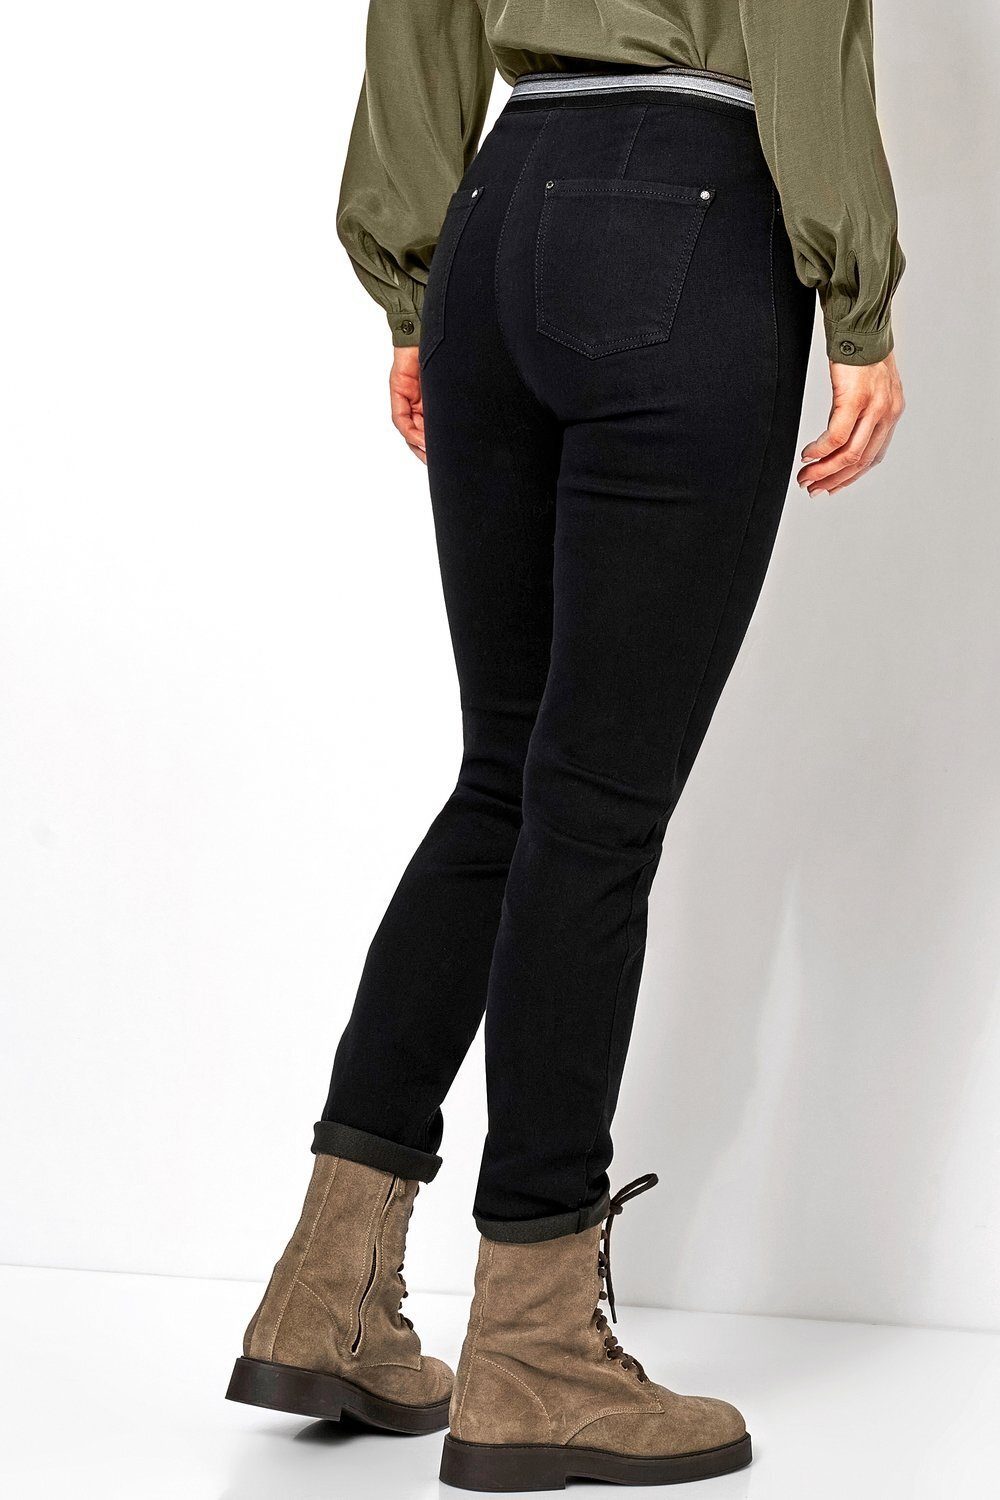 089 Ankle-Jeans gestreiftem mit Gummizug TONI - schwarz Jenny